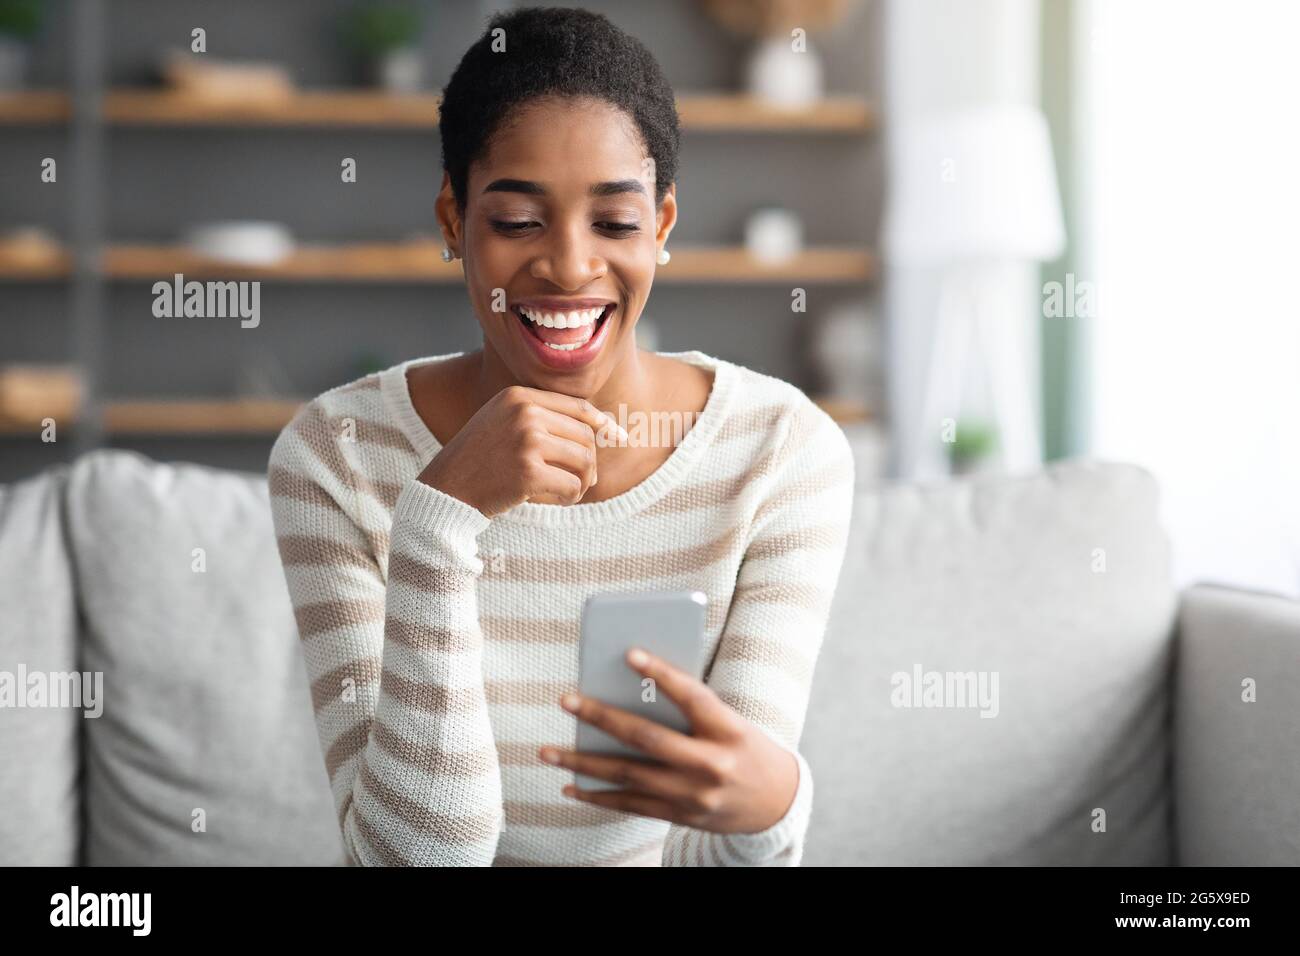 Application de datation en ligne Jeune femme seule noire utilisant un smartphone à la maison Banque D'Images